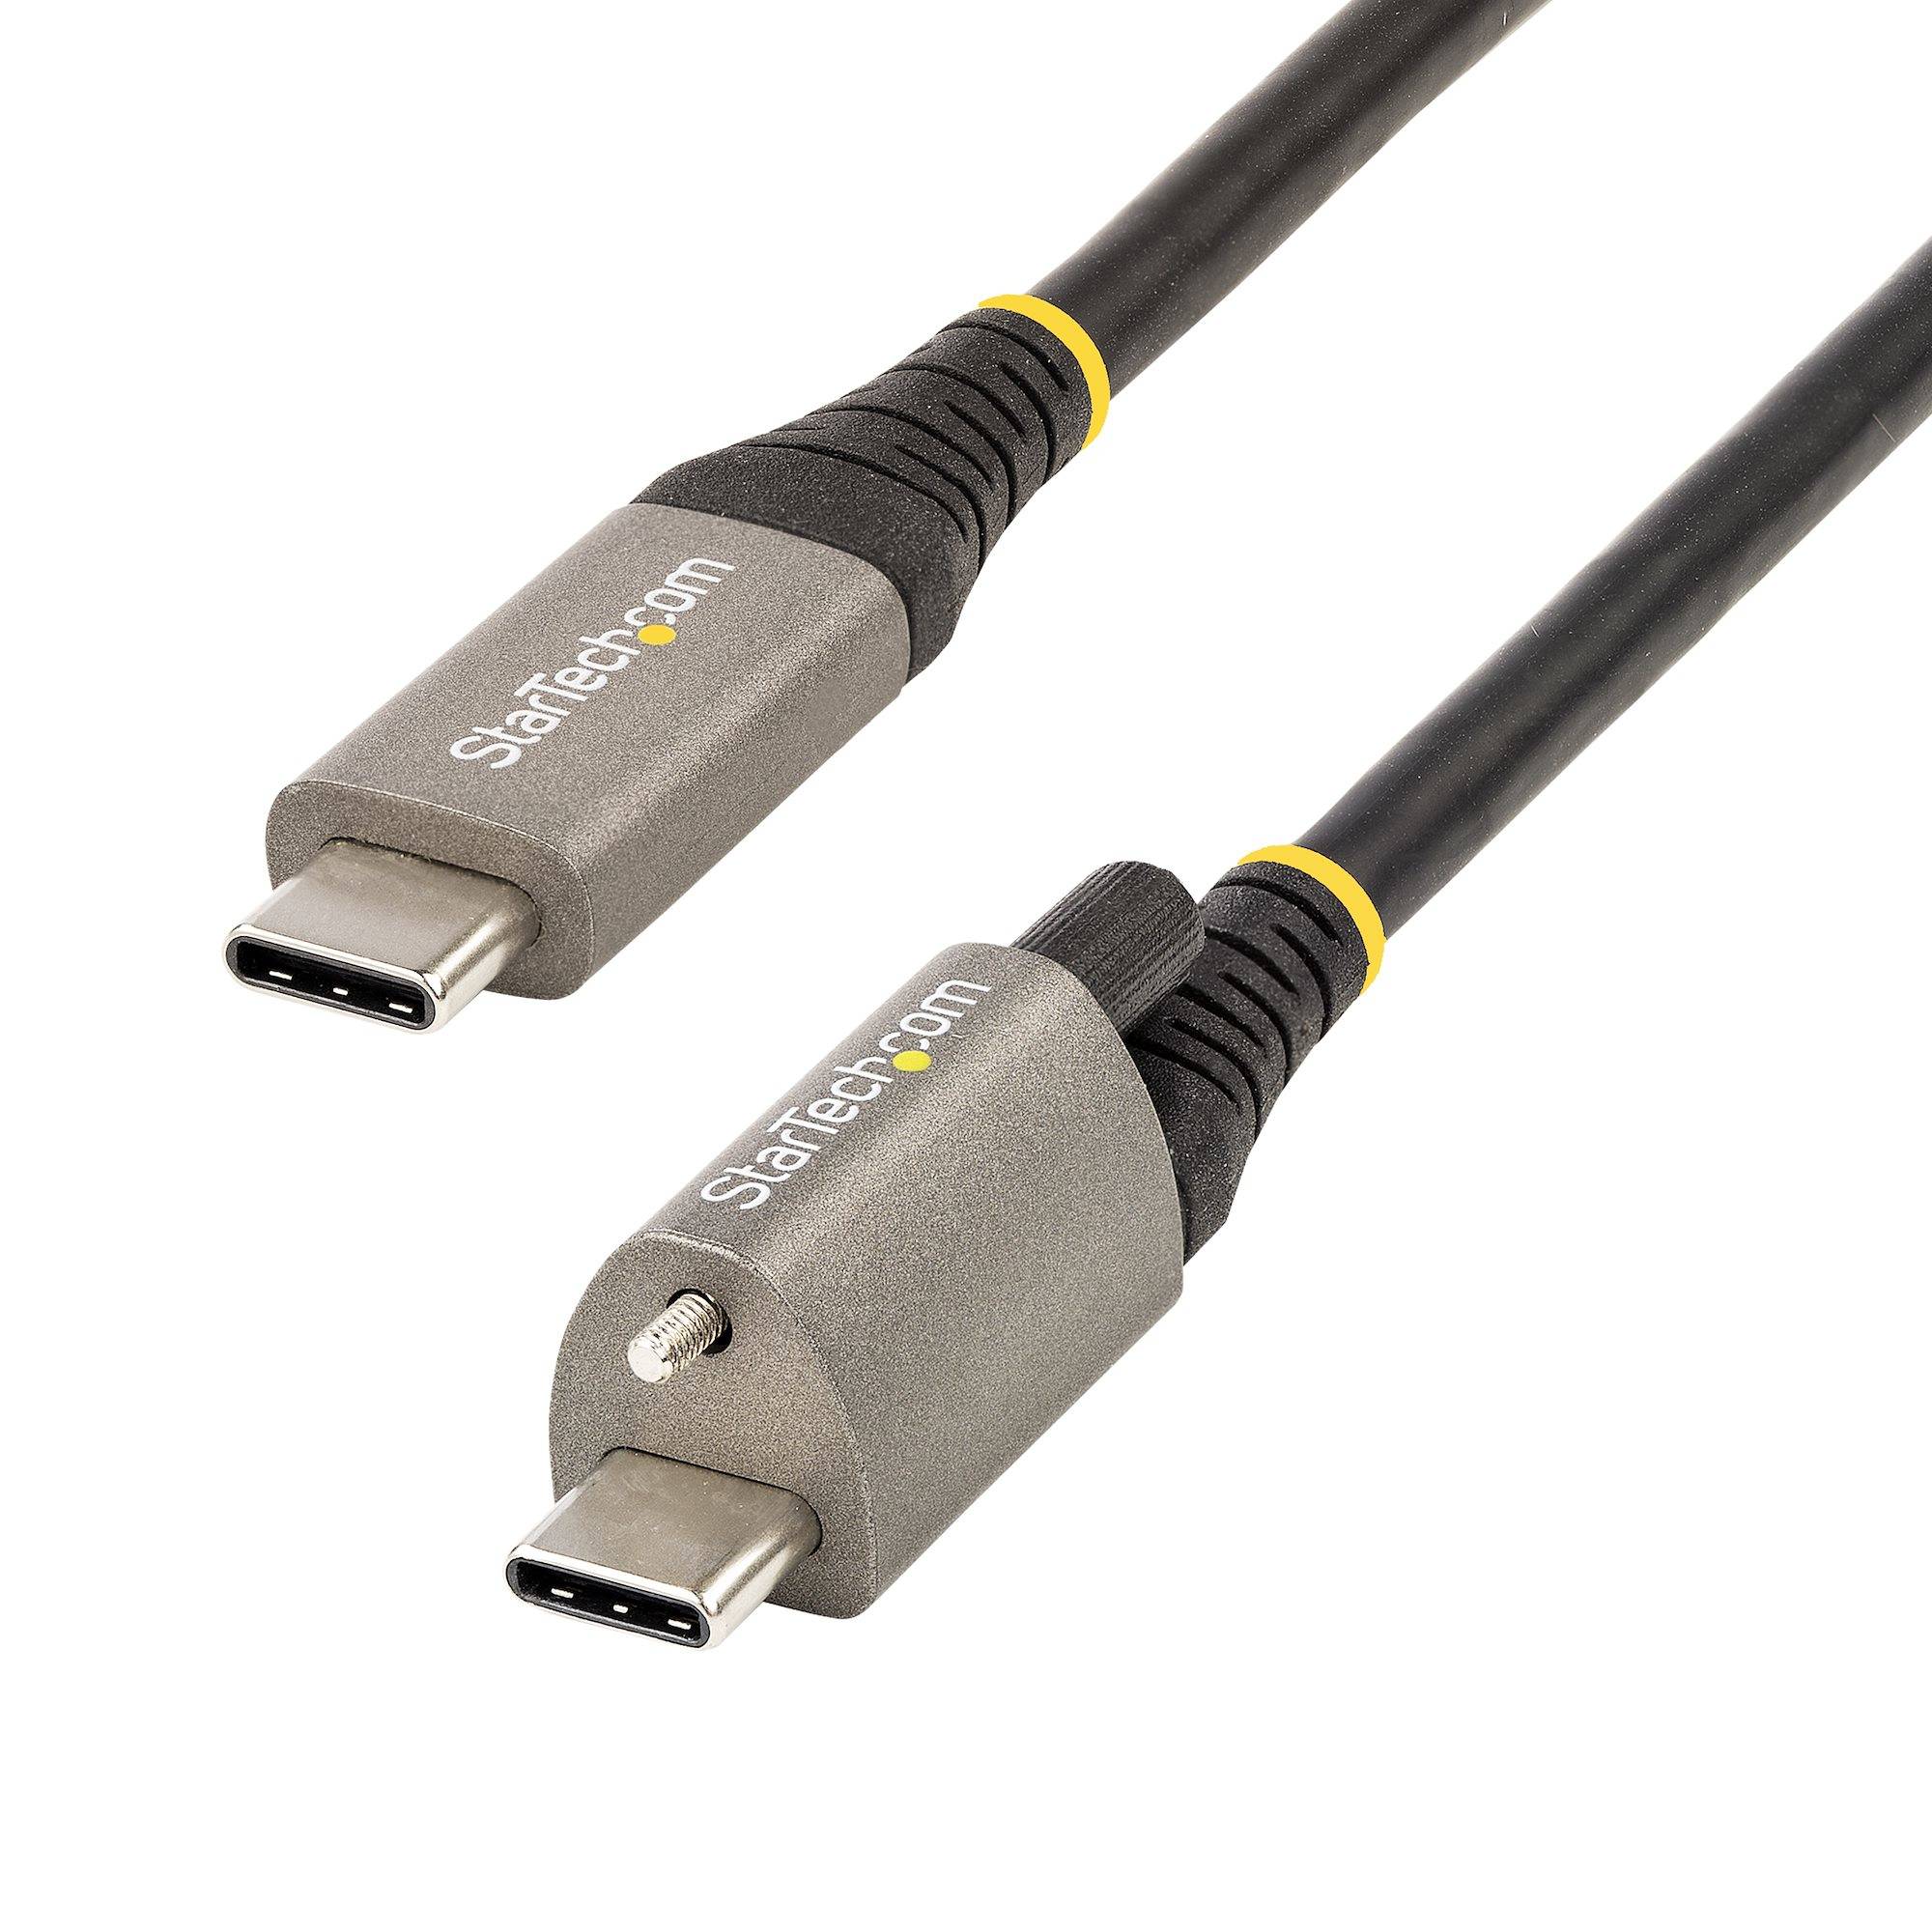 Rca Informatique - Image du produit : 1M LOCKING USB C CABLE 10GBPS - 3.3FT